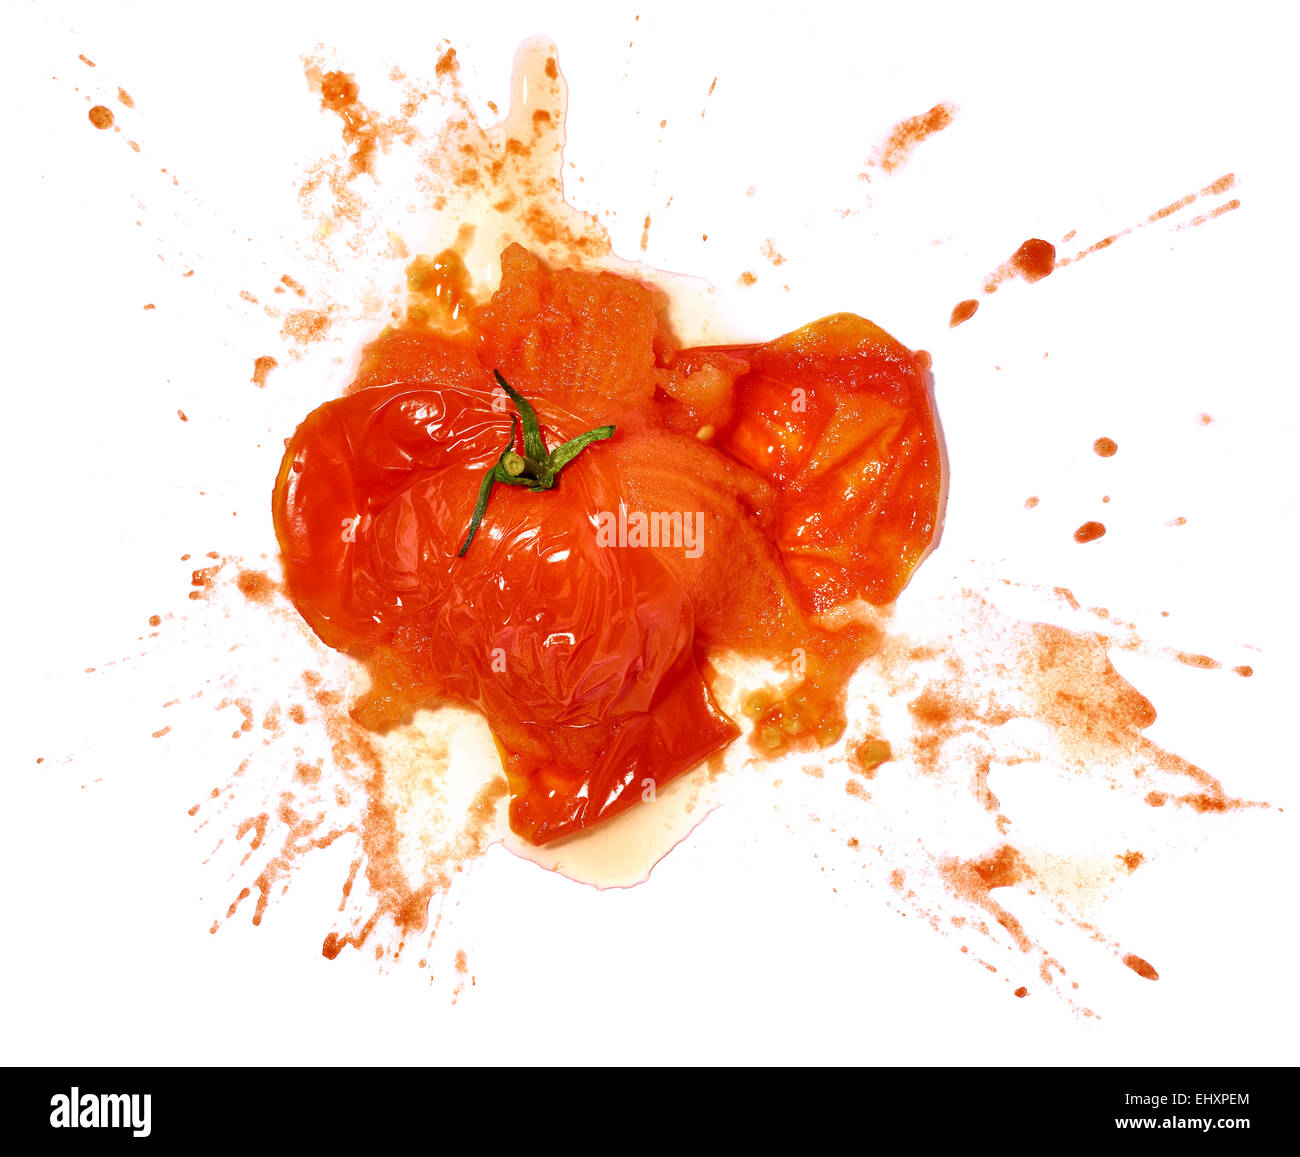 smashed-tomato-on-white-background-EHXPE